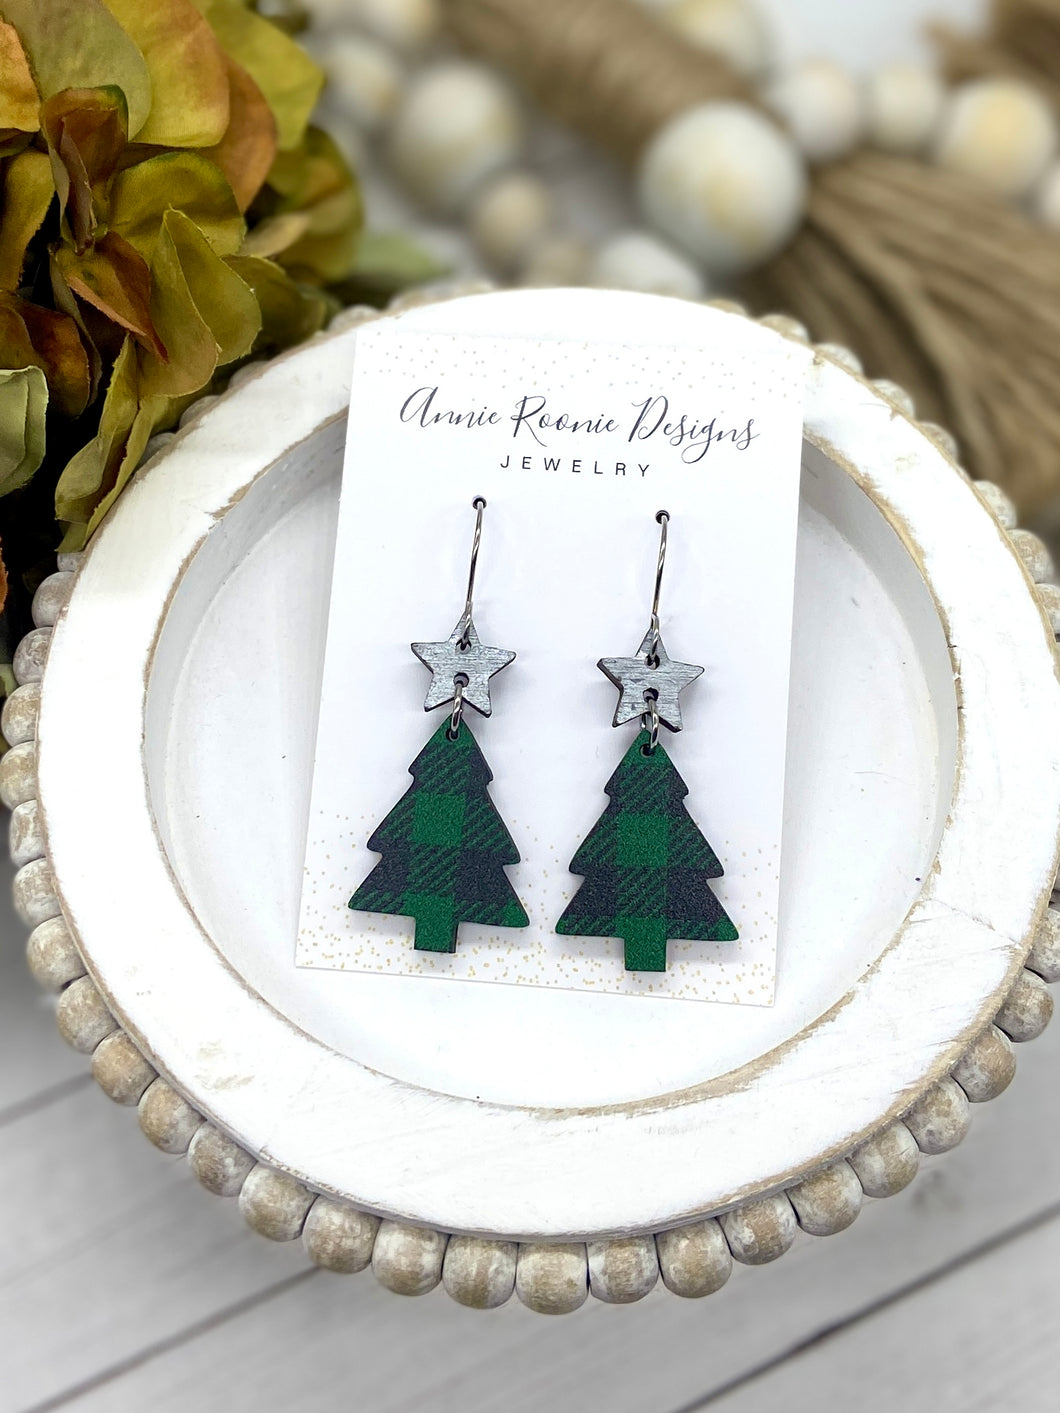 Green Buffalo Plaid Wooden Christmas Tree earrings